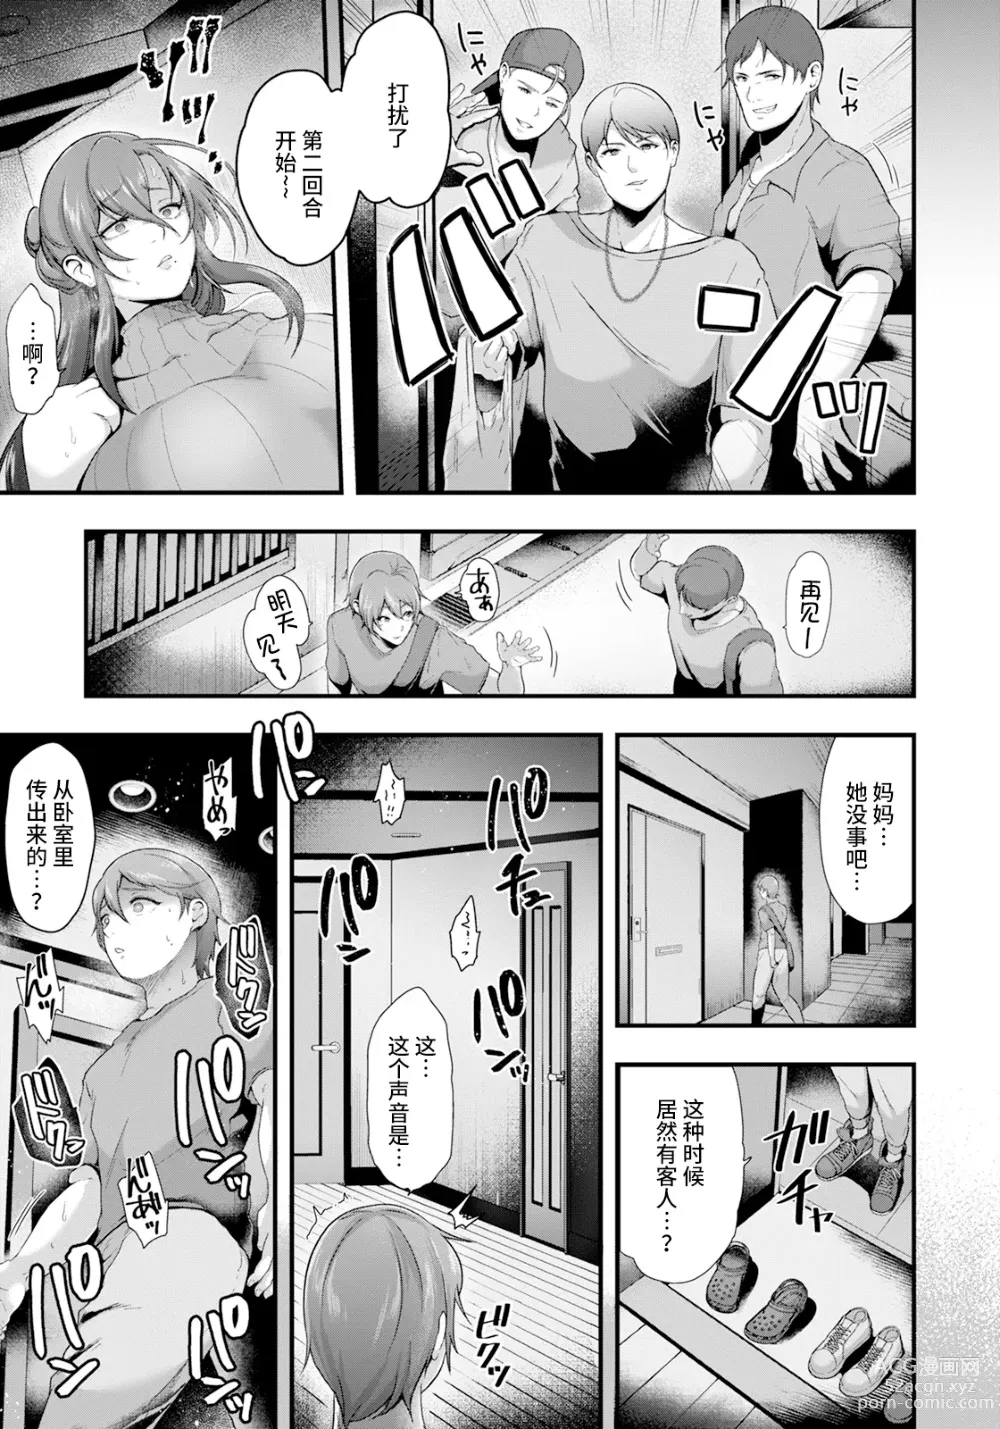 Page 13 of manga Yuukan Bonyuuzsuma